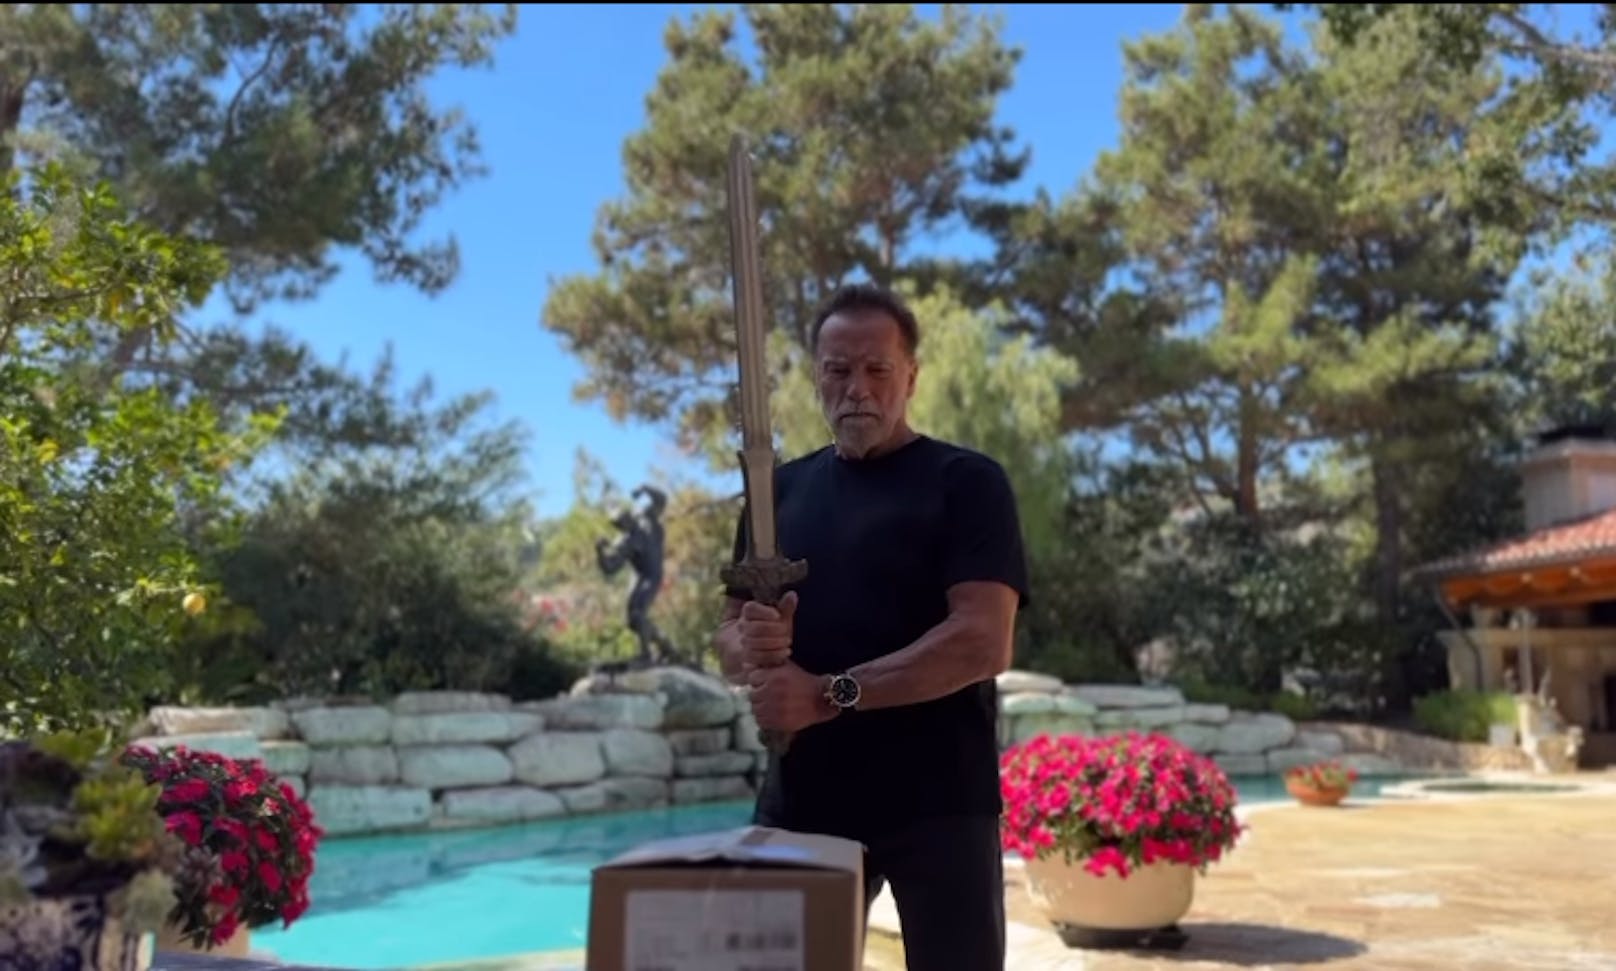 Unboxing mit Schwert: Schwarzenegger öffnet den Karton natürlich spektakulär.